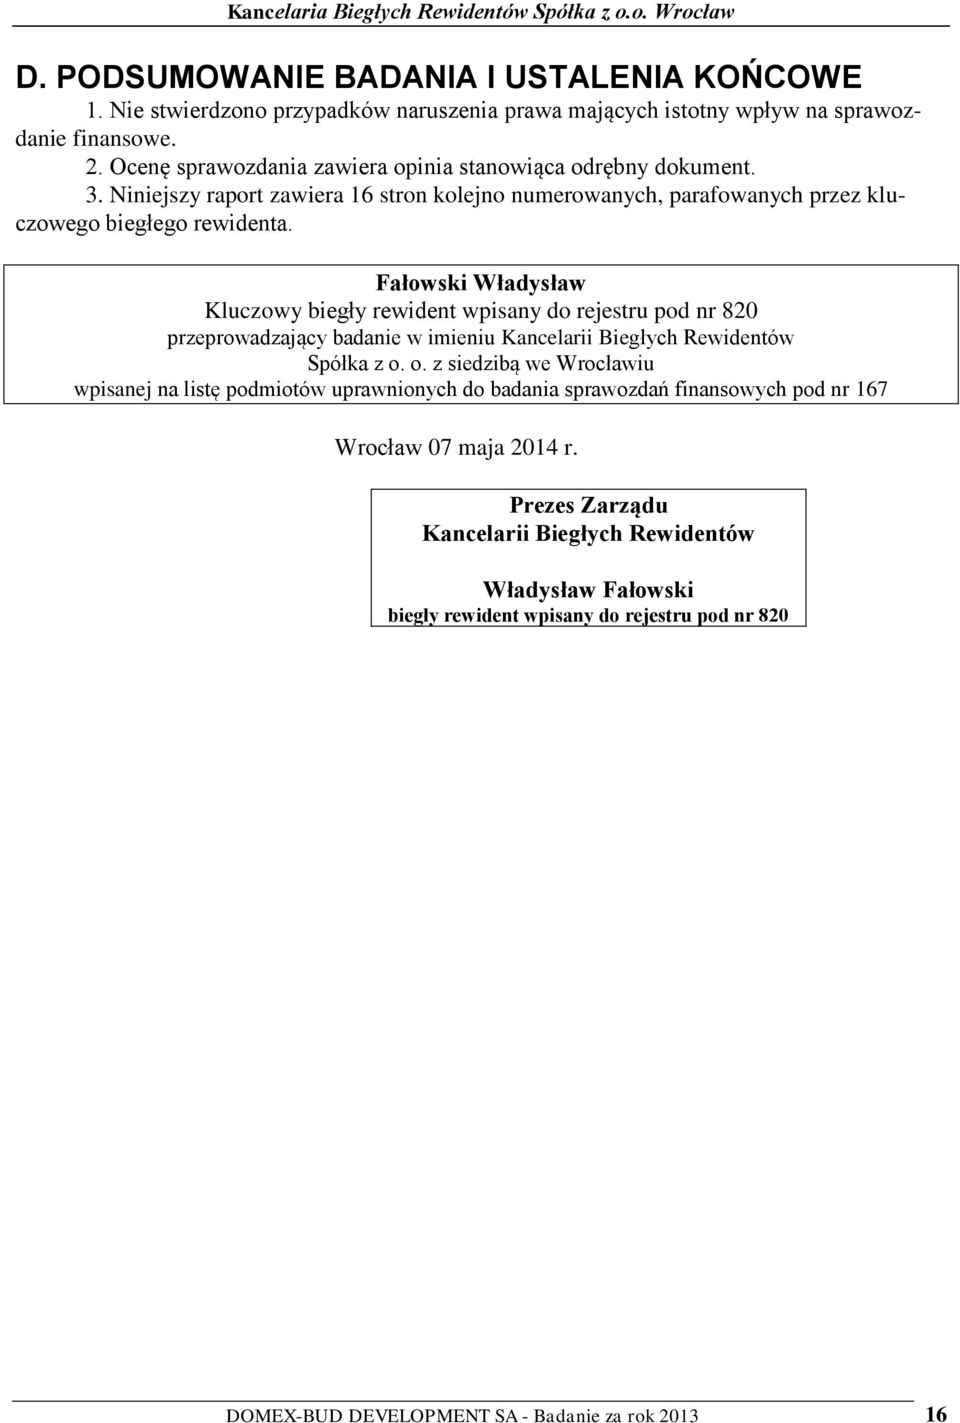 Fałowski Władysław Kluczowy biegły rewident wpisany do rejestru pod nr 820 przeprowadzający badanie w imieniu Kancelarii Biegłych Rewidentów Spółka z o.